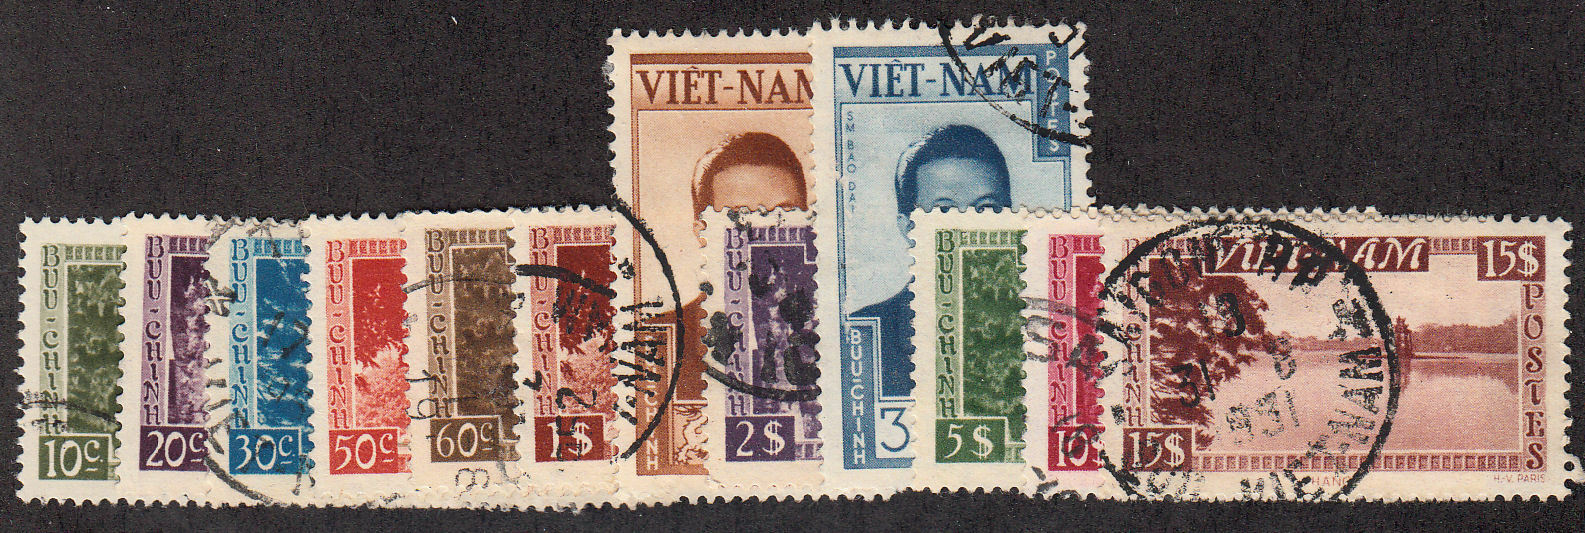 Vietnam - 1951 - SC 1-12 - Used - Short set